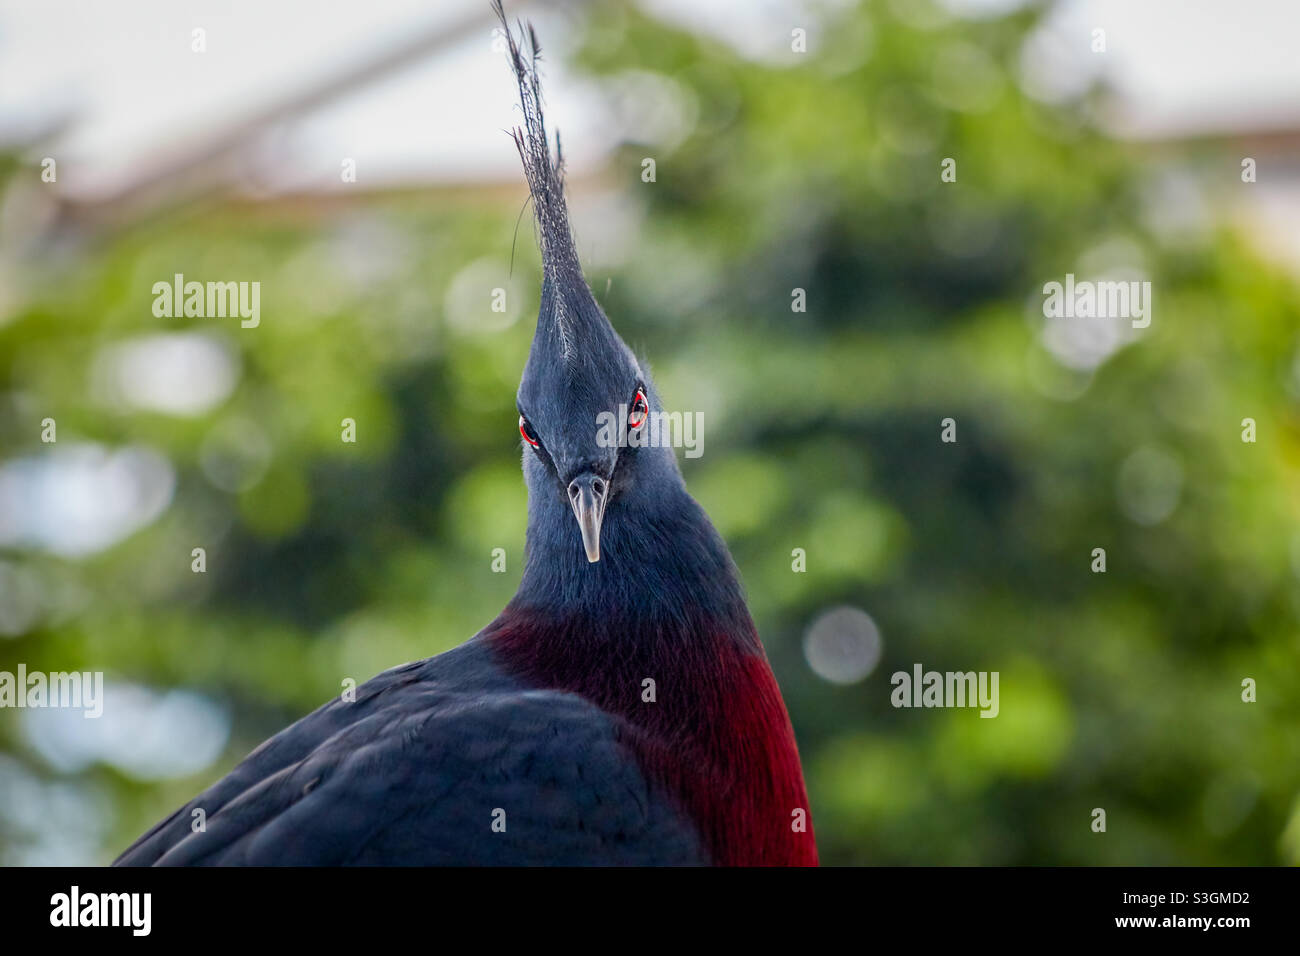 Le pigeon couronné Victoria, Latin Goura victoria, regarde directement dans l'appareil photo avec ses yeux rouges et ses plumes typiques de tête pourpres, rouge-vin, bleu, turquoise Banque D'Images